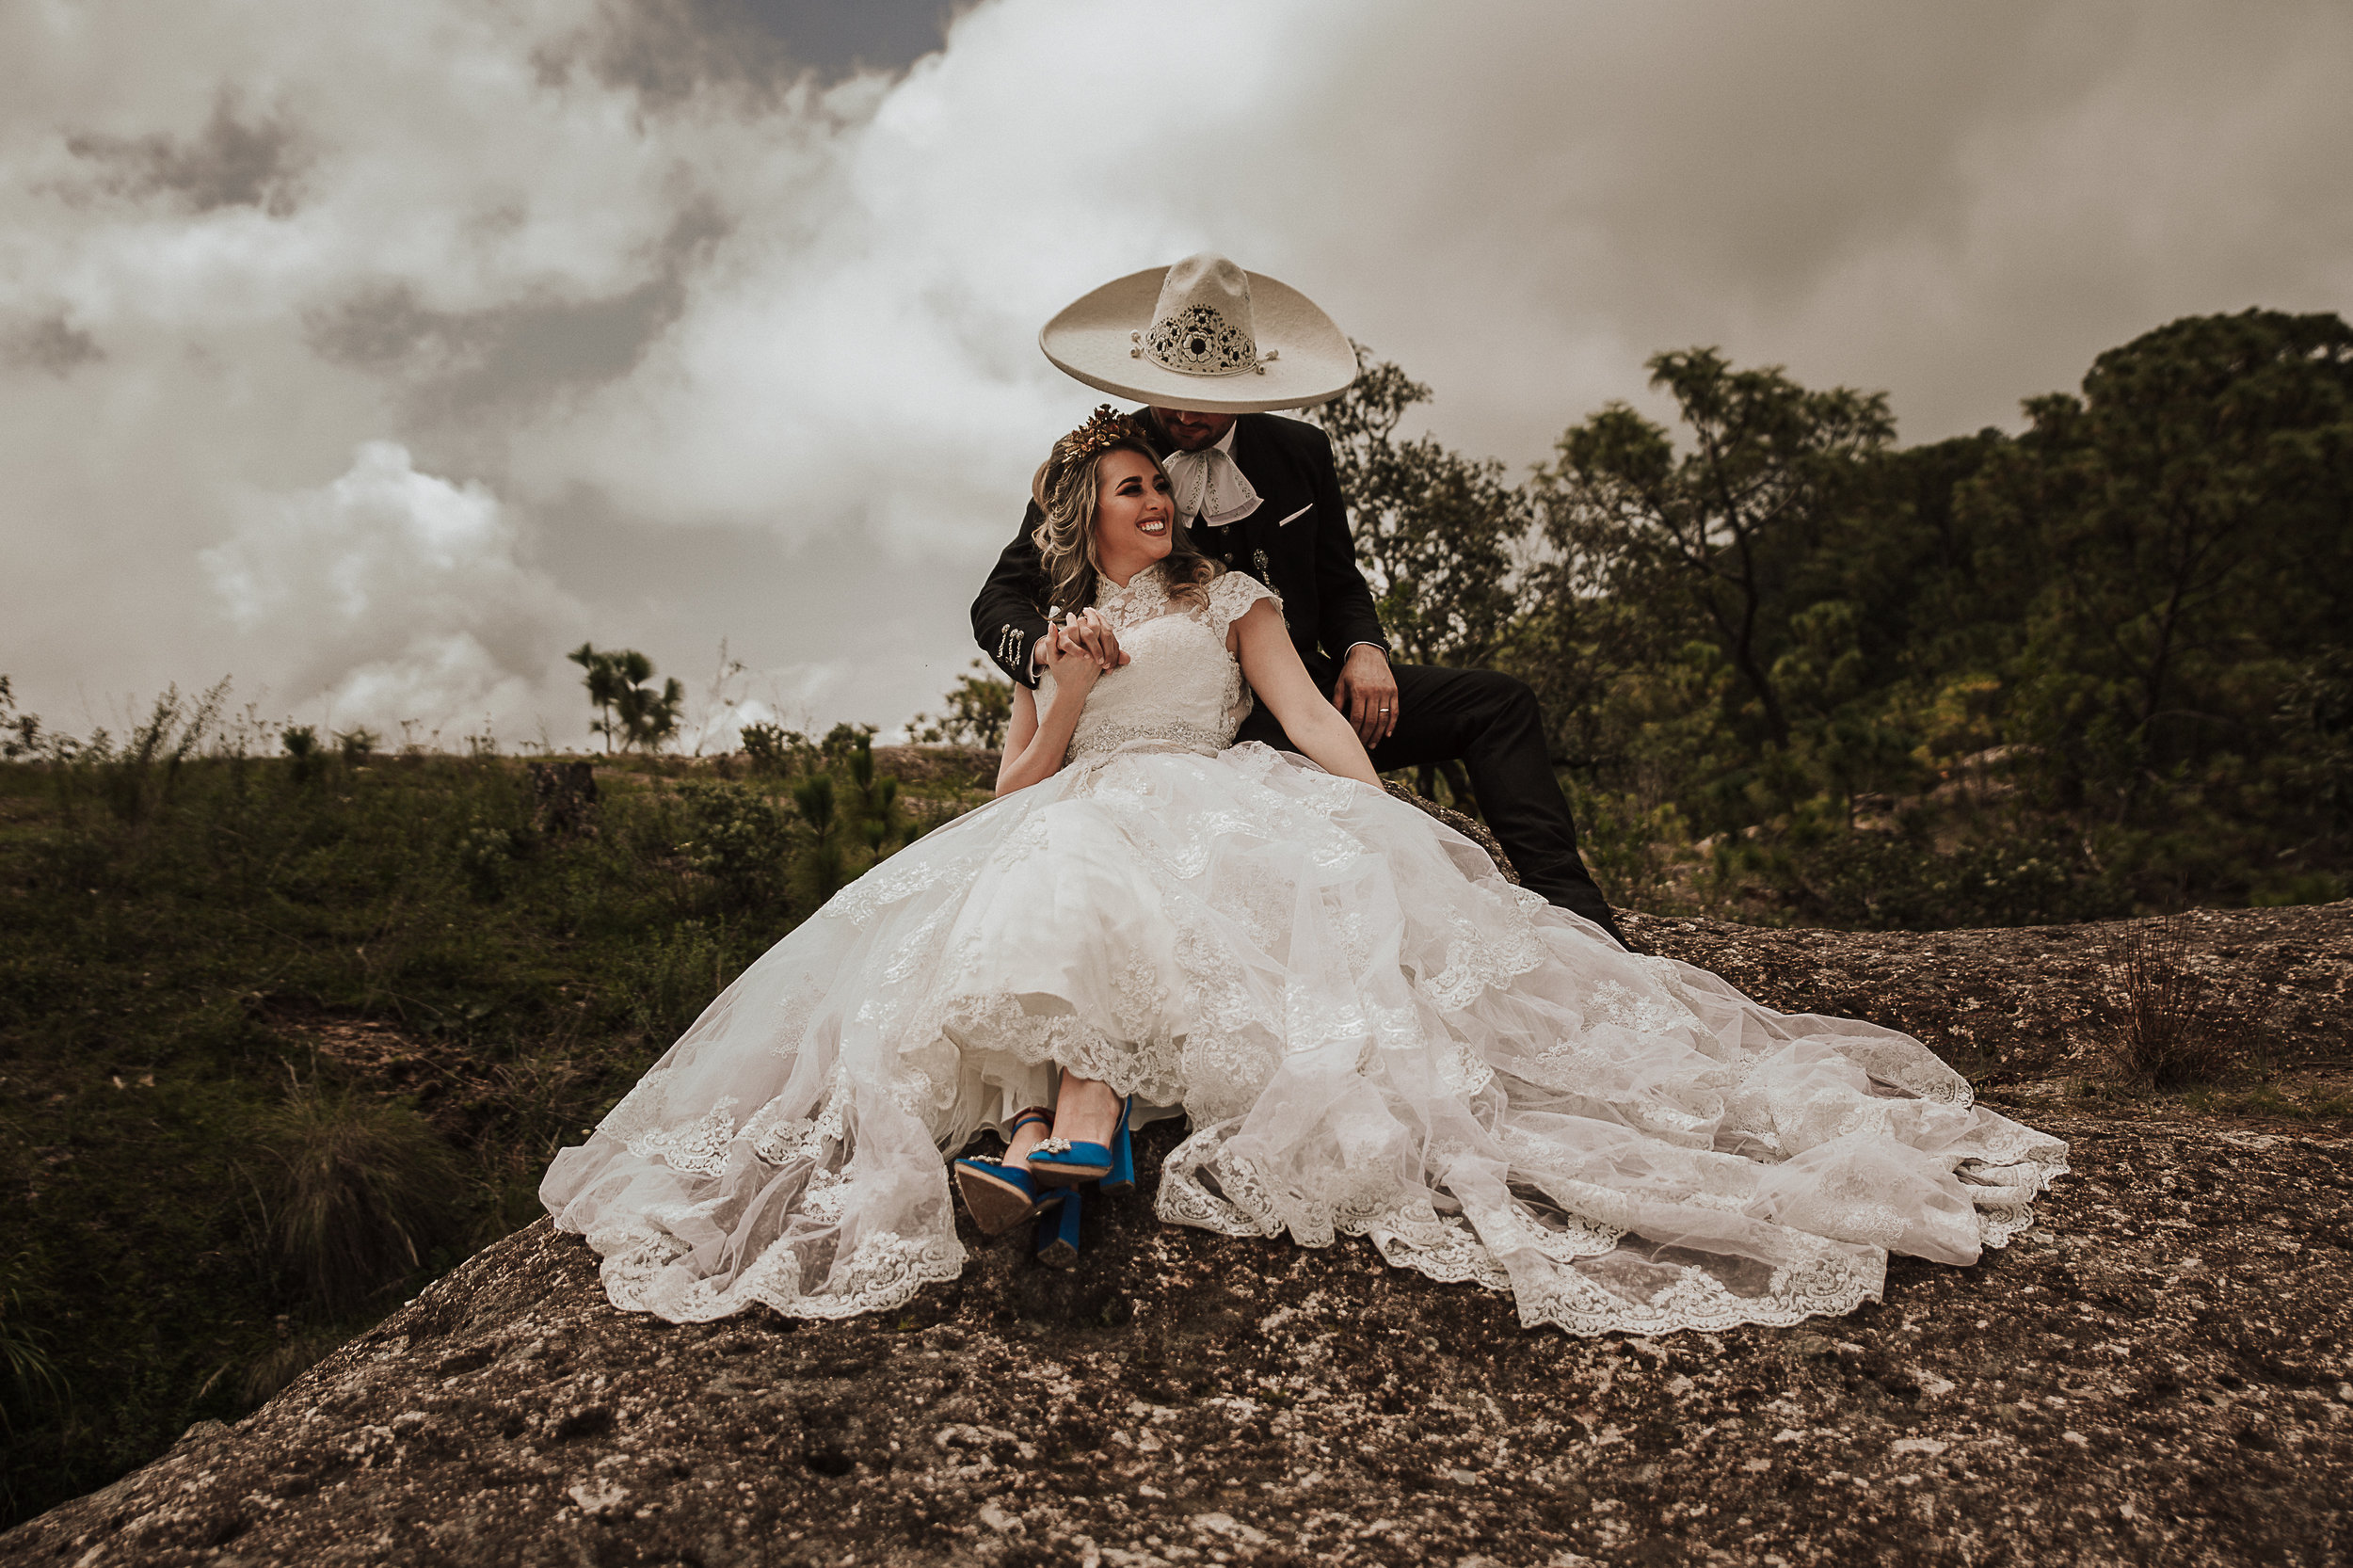 Fotografo-de-bodas-destino-Mexico-wedding-destination-photographer-san-miguel-de-allende-gto-guanajuato-queretaro-boho-bohemian-bohemio-chic-wedding-editorial-wedding